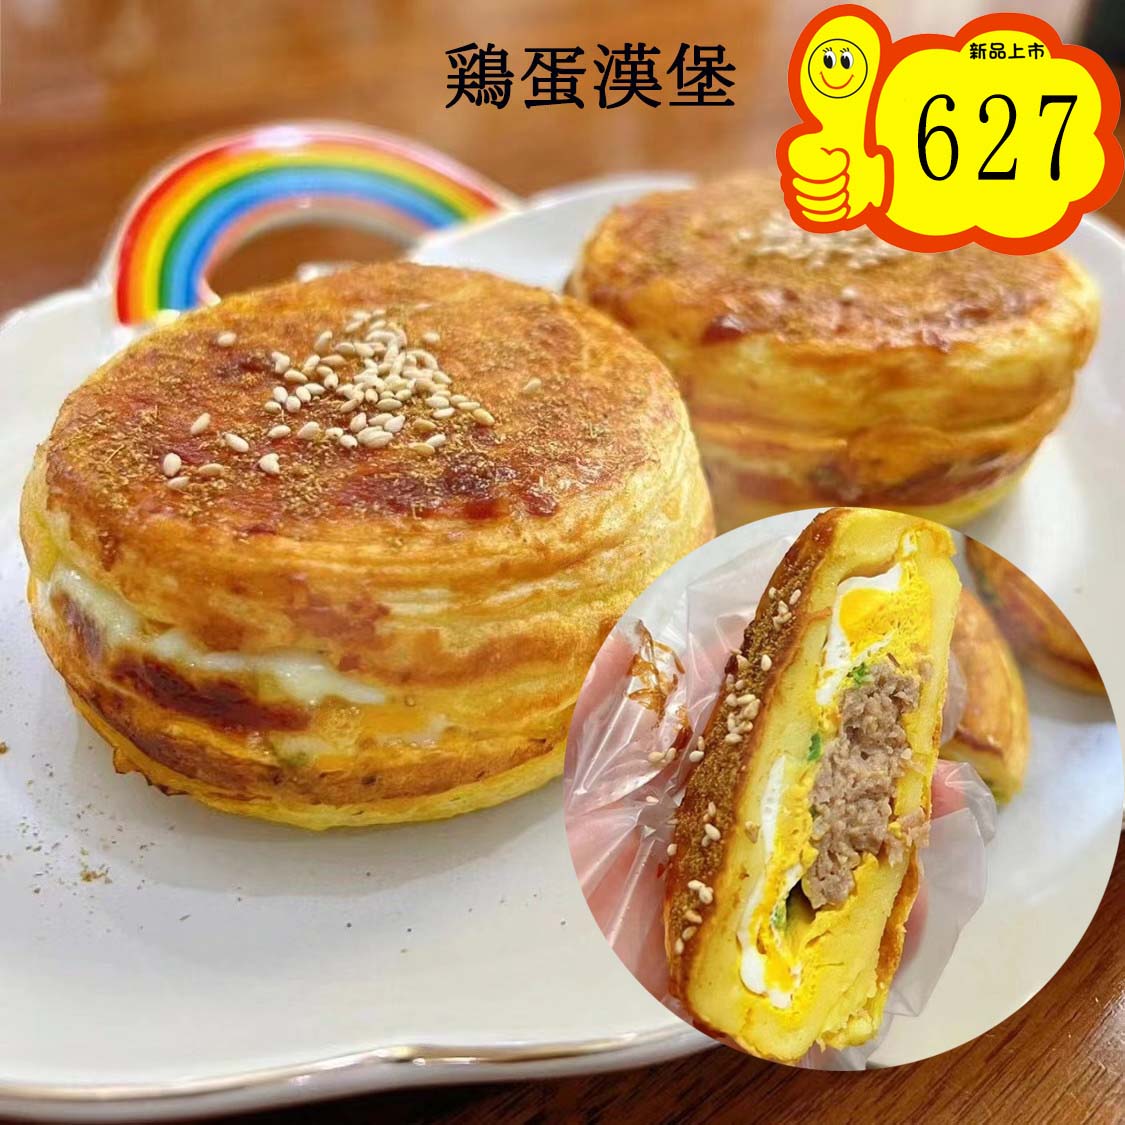 鶏蛋漢堡2个入　日本国内加工 冷凍品 原价698円特价627円